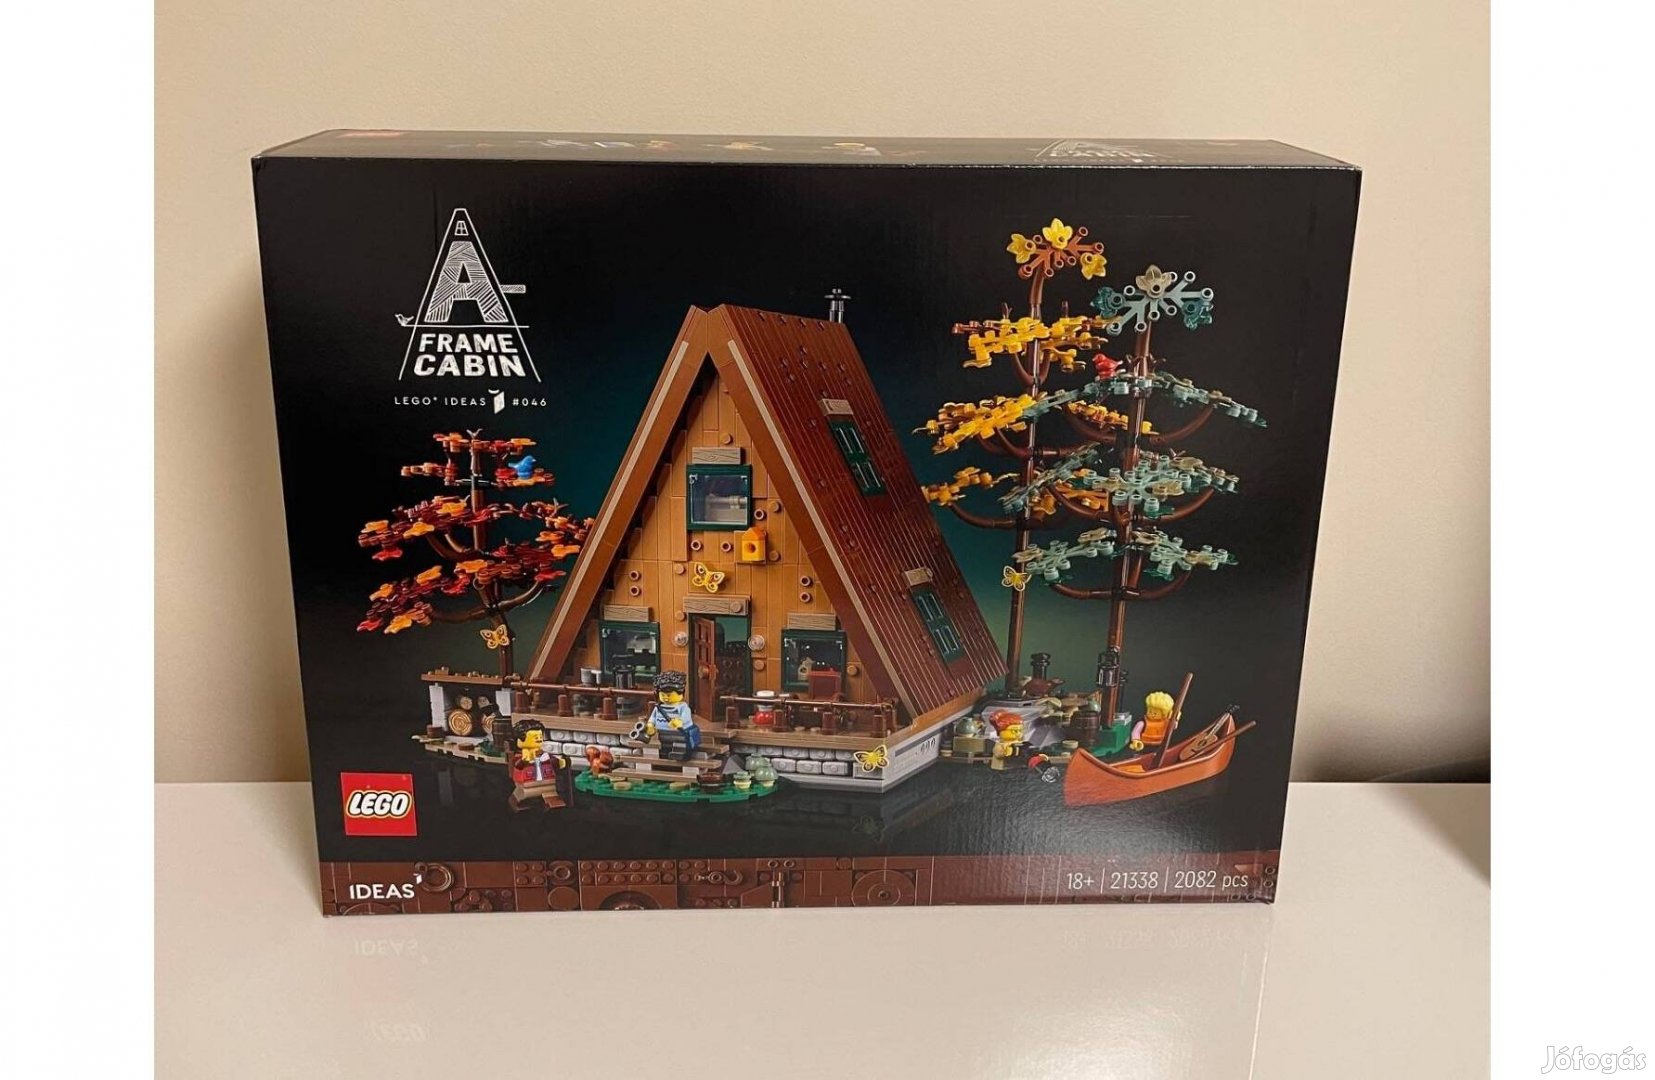 LEGO 21338 - Alpesi ház Új, Bontatlan!